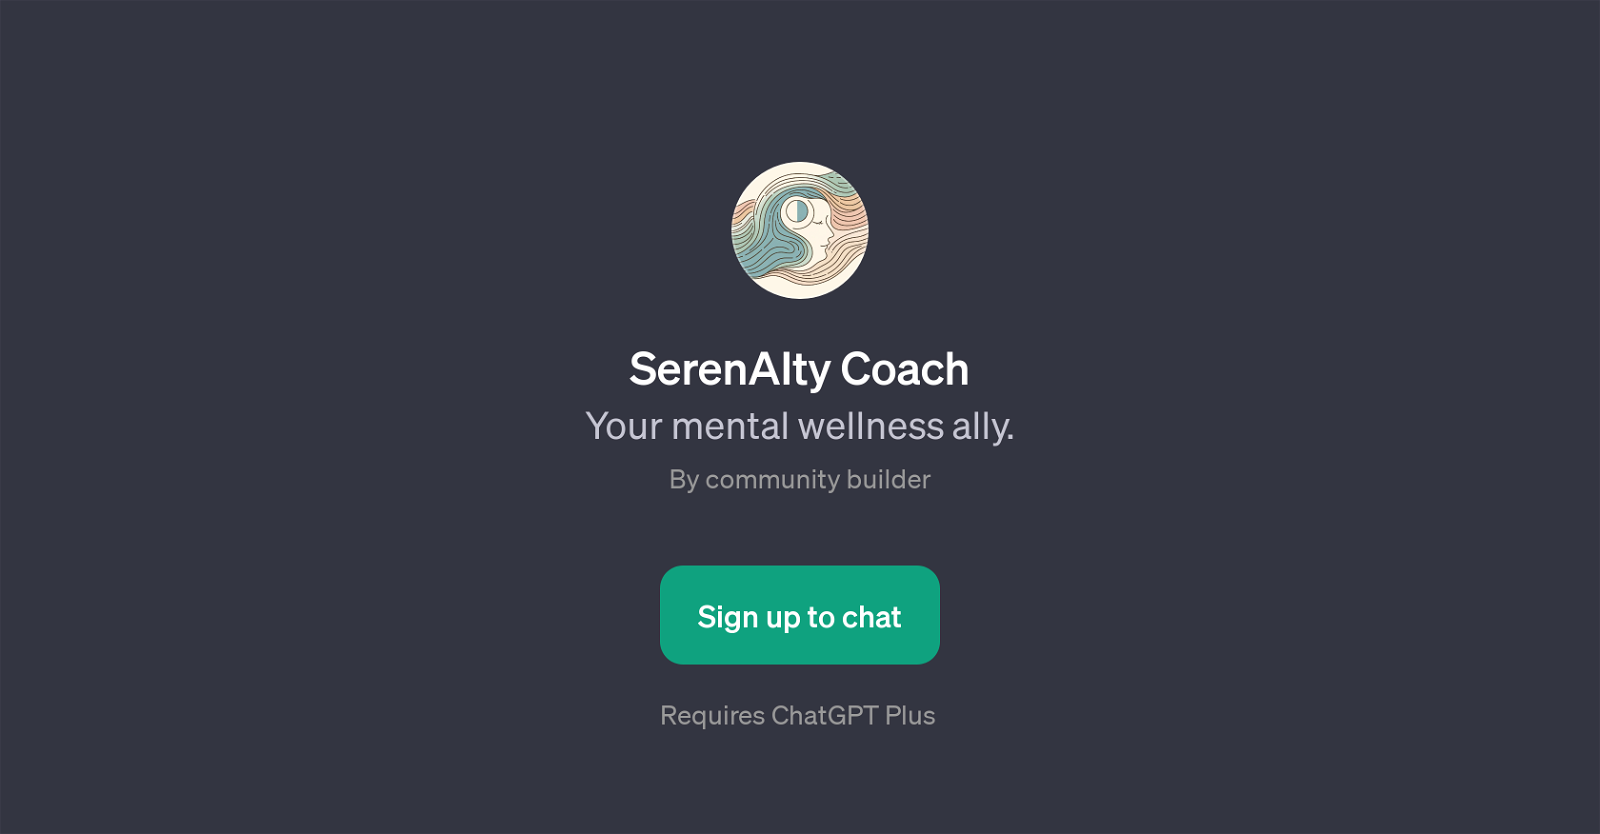 SerenAIty Coach website